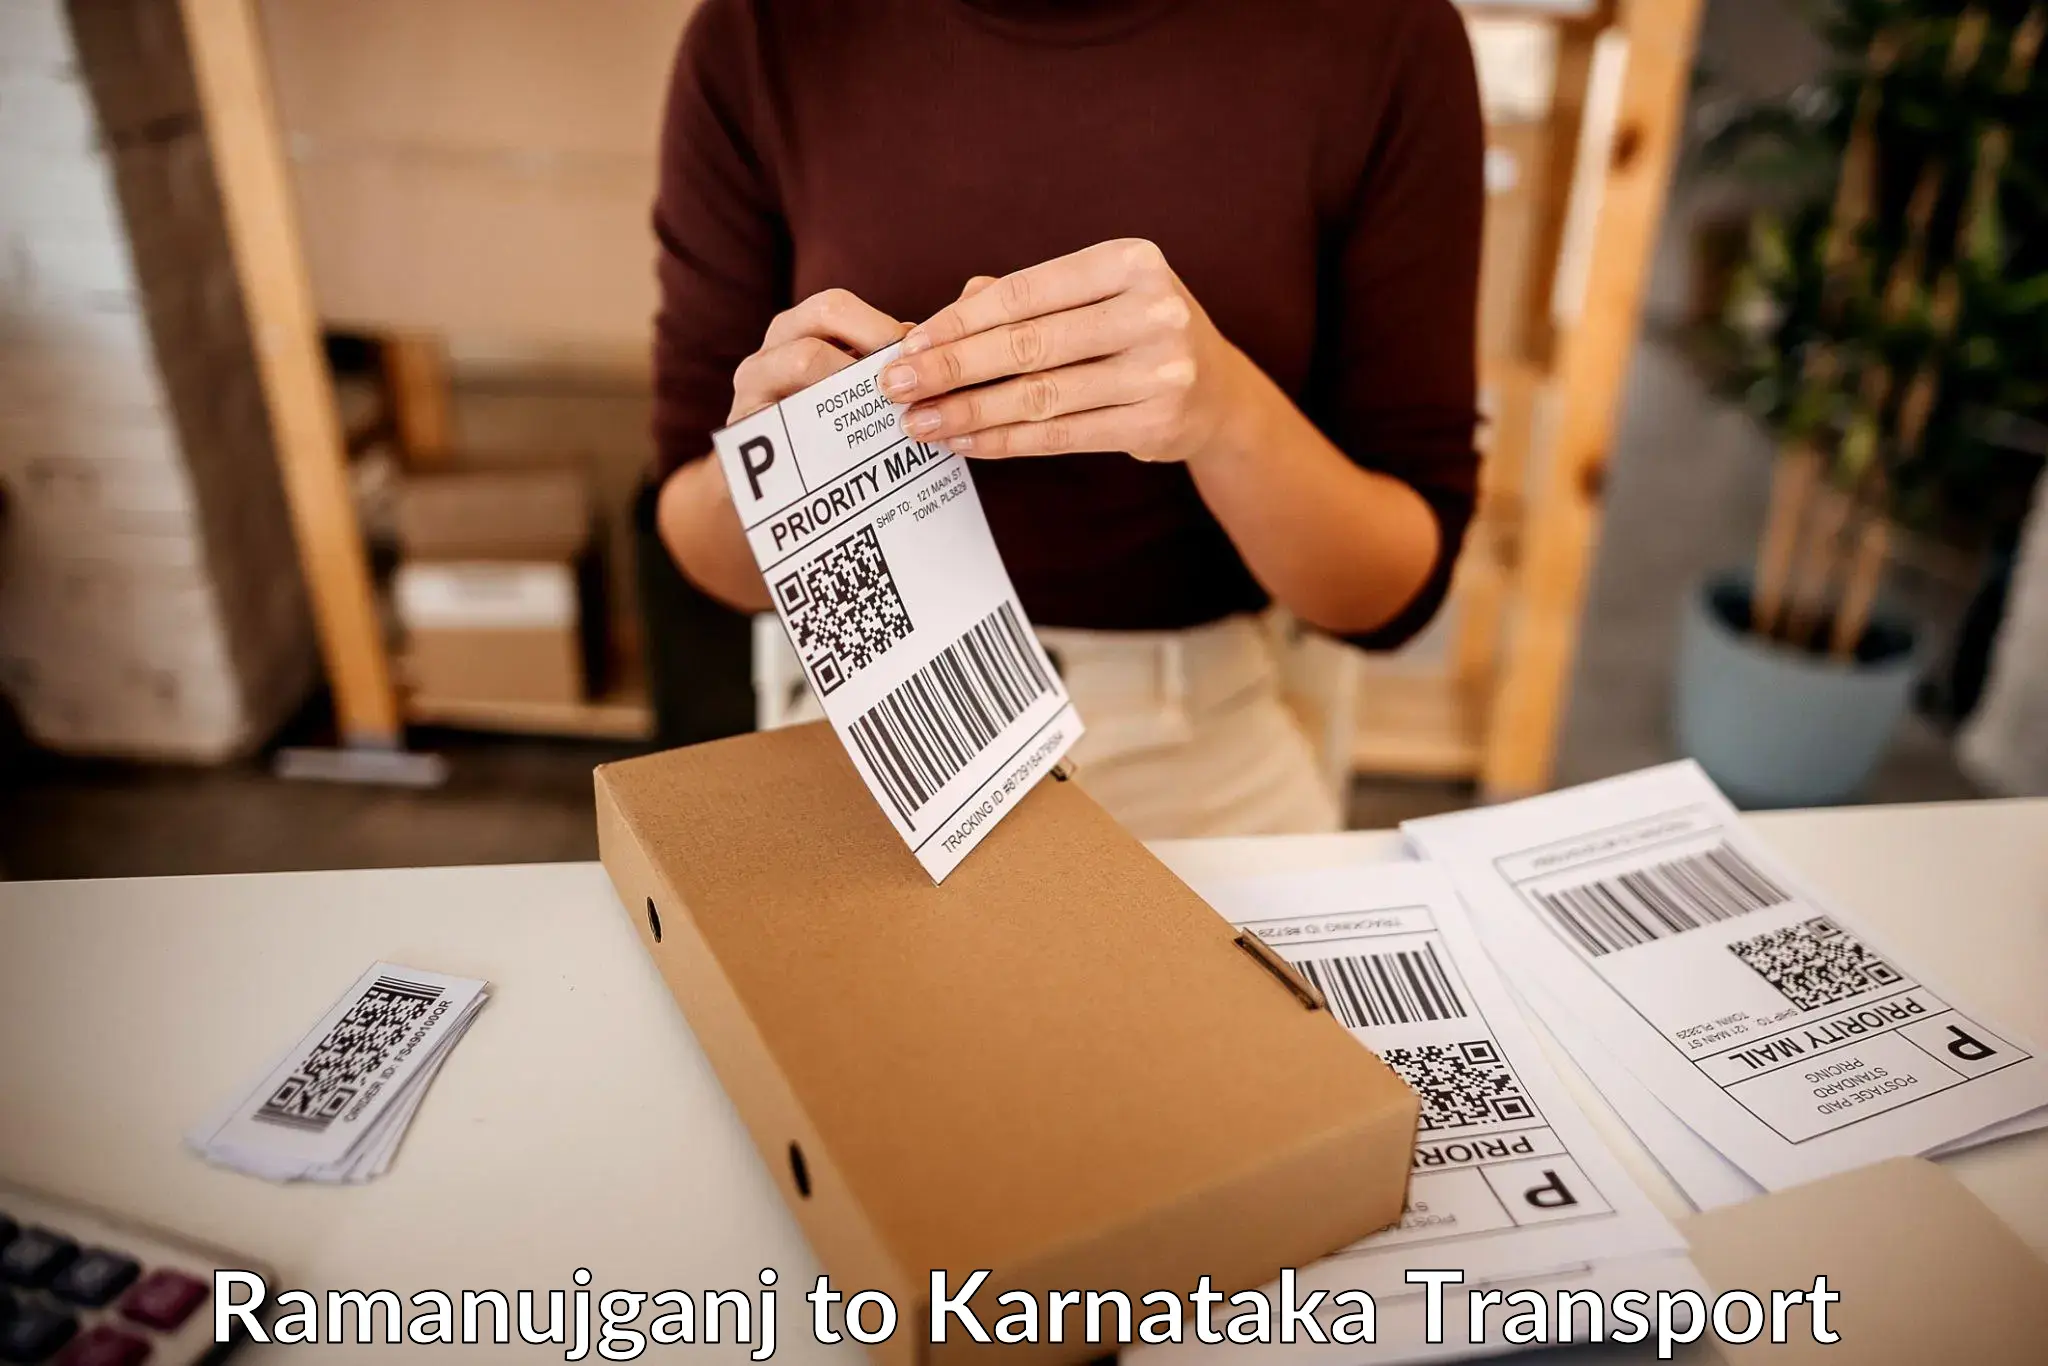 Furniture transport service Ramanujganj to Koppal